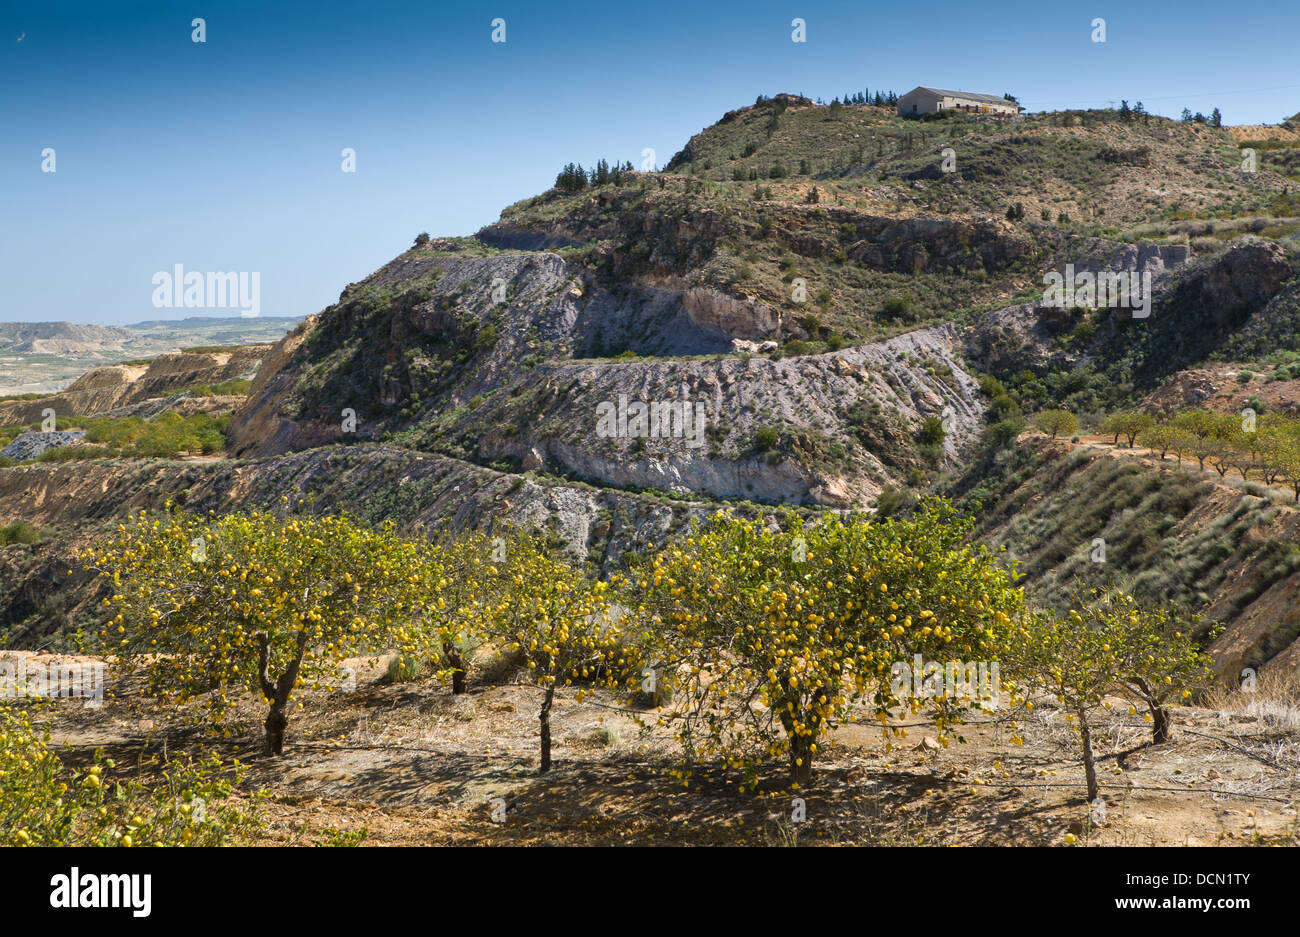 Citrons sur les arbres en croissance dans la région de Murcie, Espagne. Banque D'Images